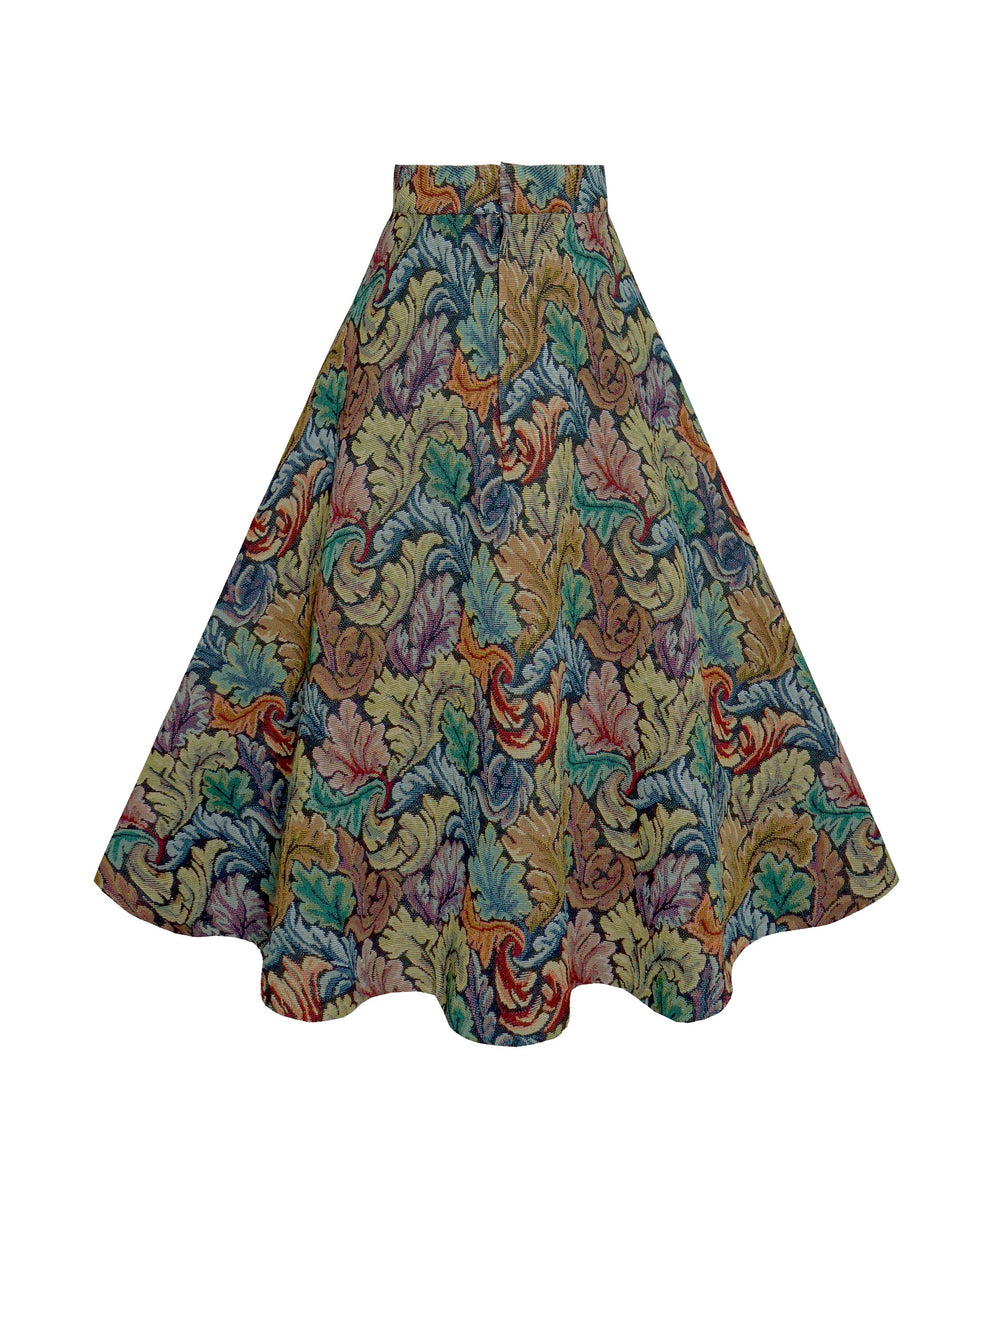 RTS - Size S - Lilian Skirt Tapestry "Bohemian Botanical"